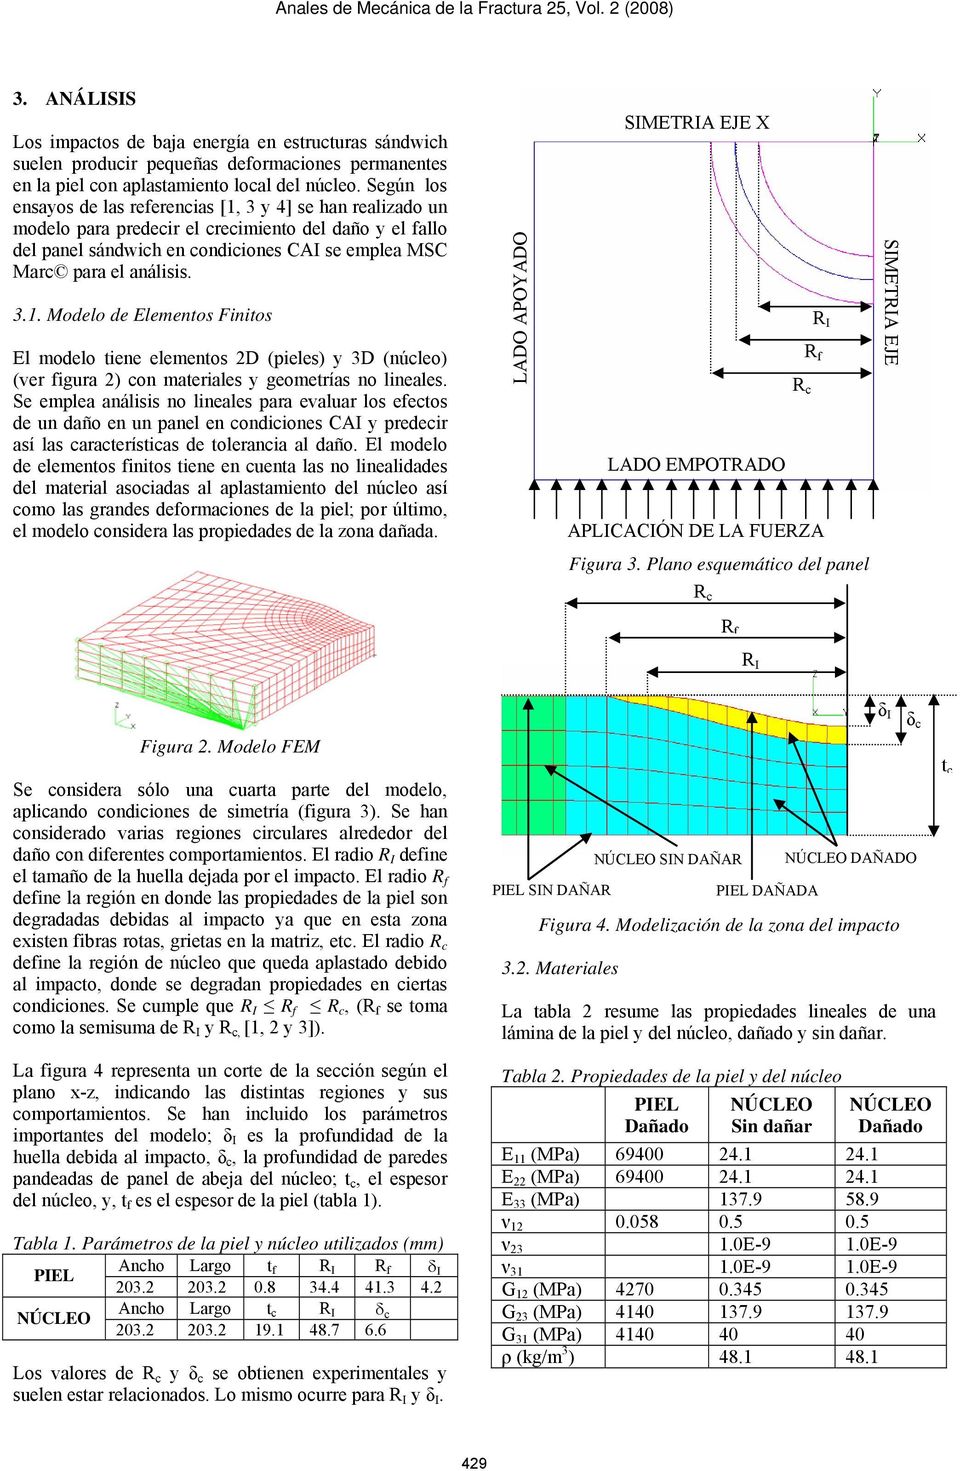 3.1. Modelo de Elementos Finitos El modelo tiene elementos 2D (pieles) y 3D (núcleo) (ver figura 2) con materiales y geometrías no lineales.